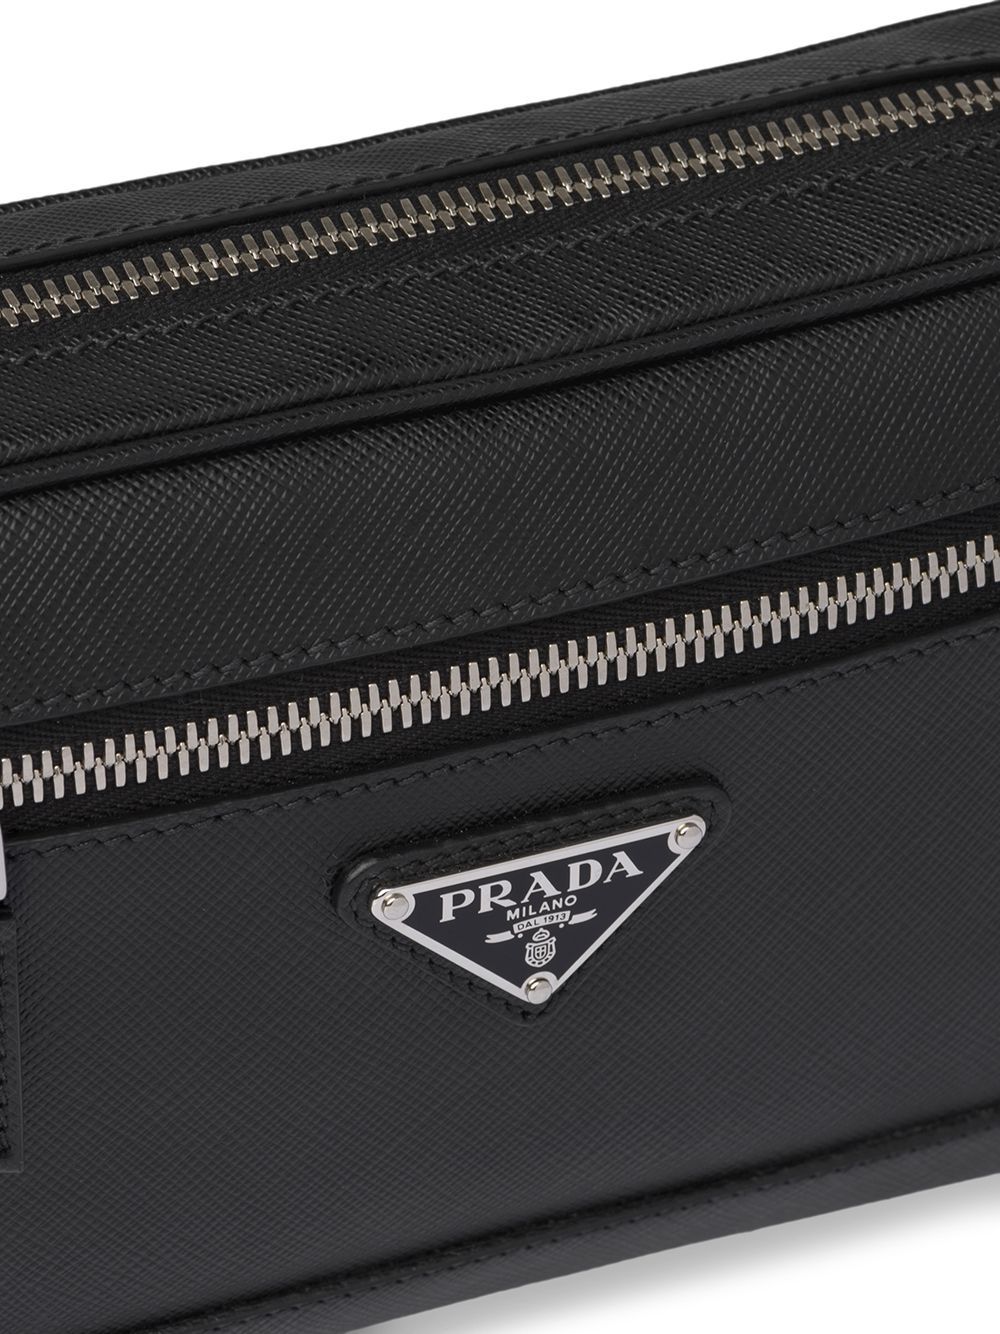 фото Prada поясная сумка из сафьяновой кожи